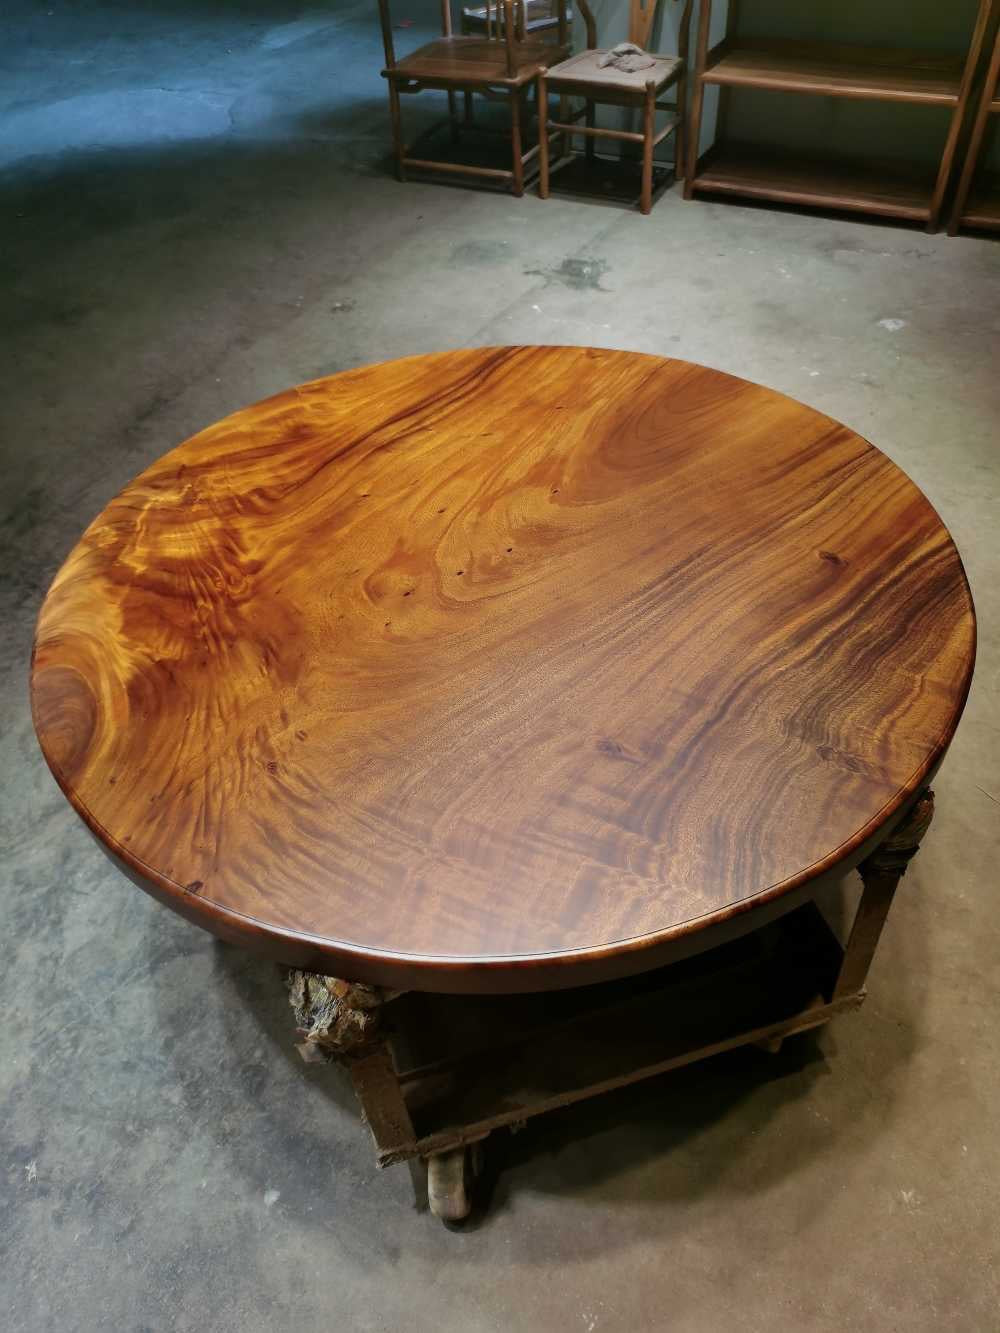 Mesa redonda de madeira crua, não mesa redonda de madeira de carvalho, tampos de mesa redonda de madeira inacabada, mesa redonda de madeira com borda viva